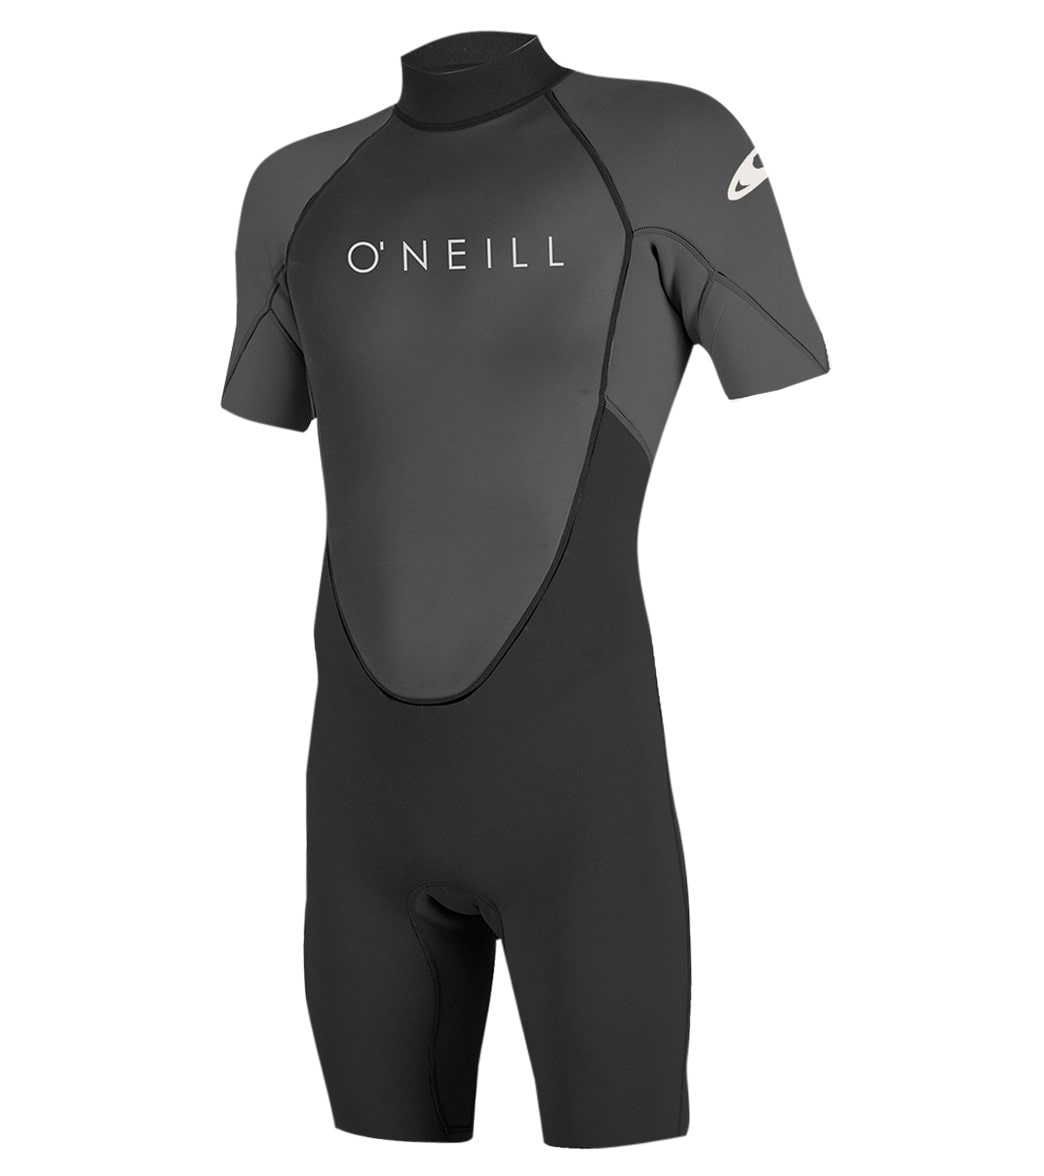 ONeill Mens 2MM Reactor II Back Zip Short Sleeve Spring Suit